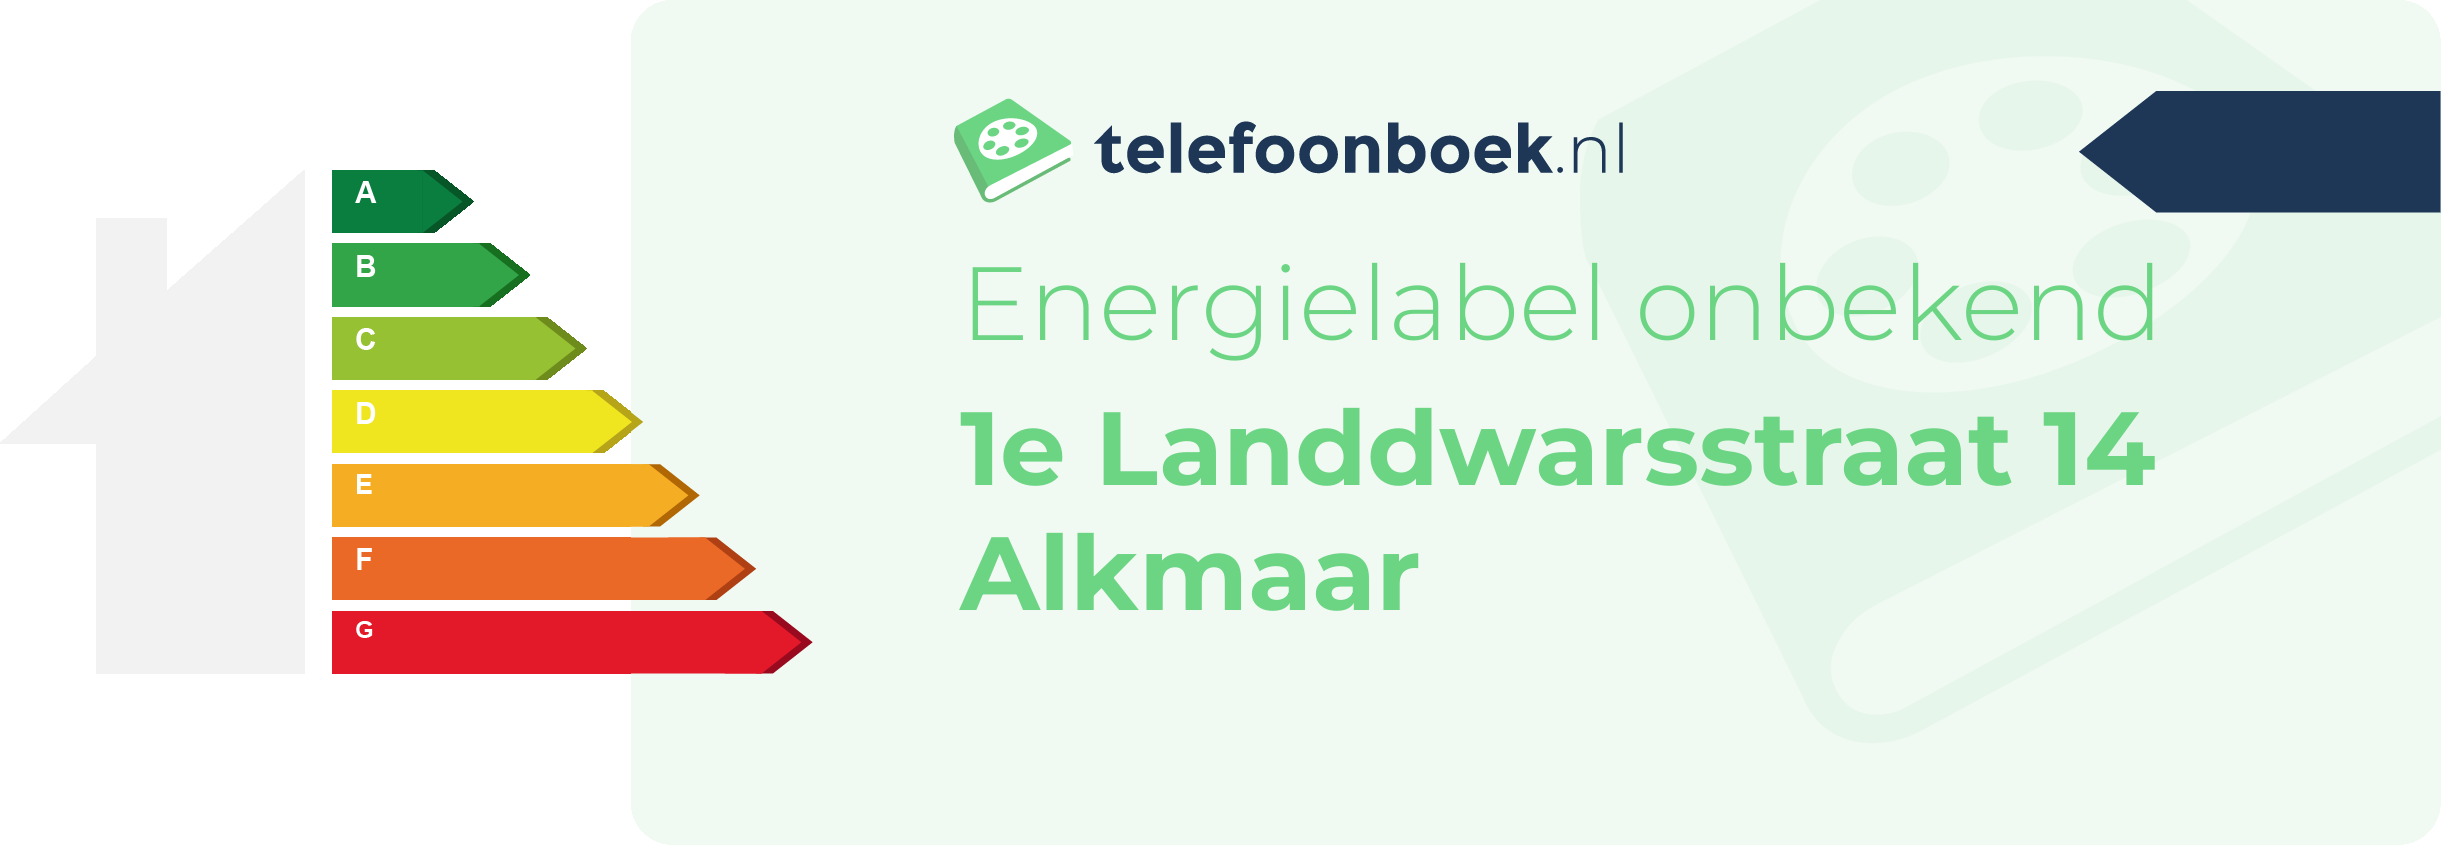 Energielabel 1e Landdwarsstraat 14 Alkmaar